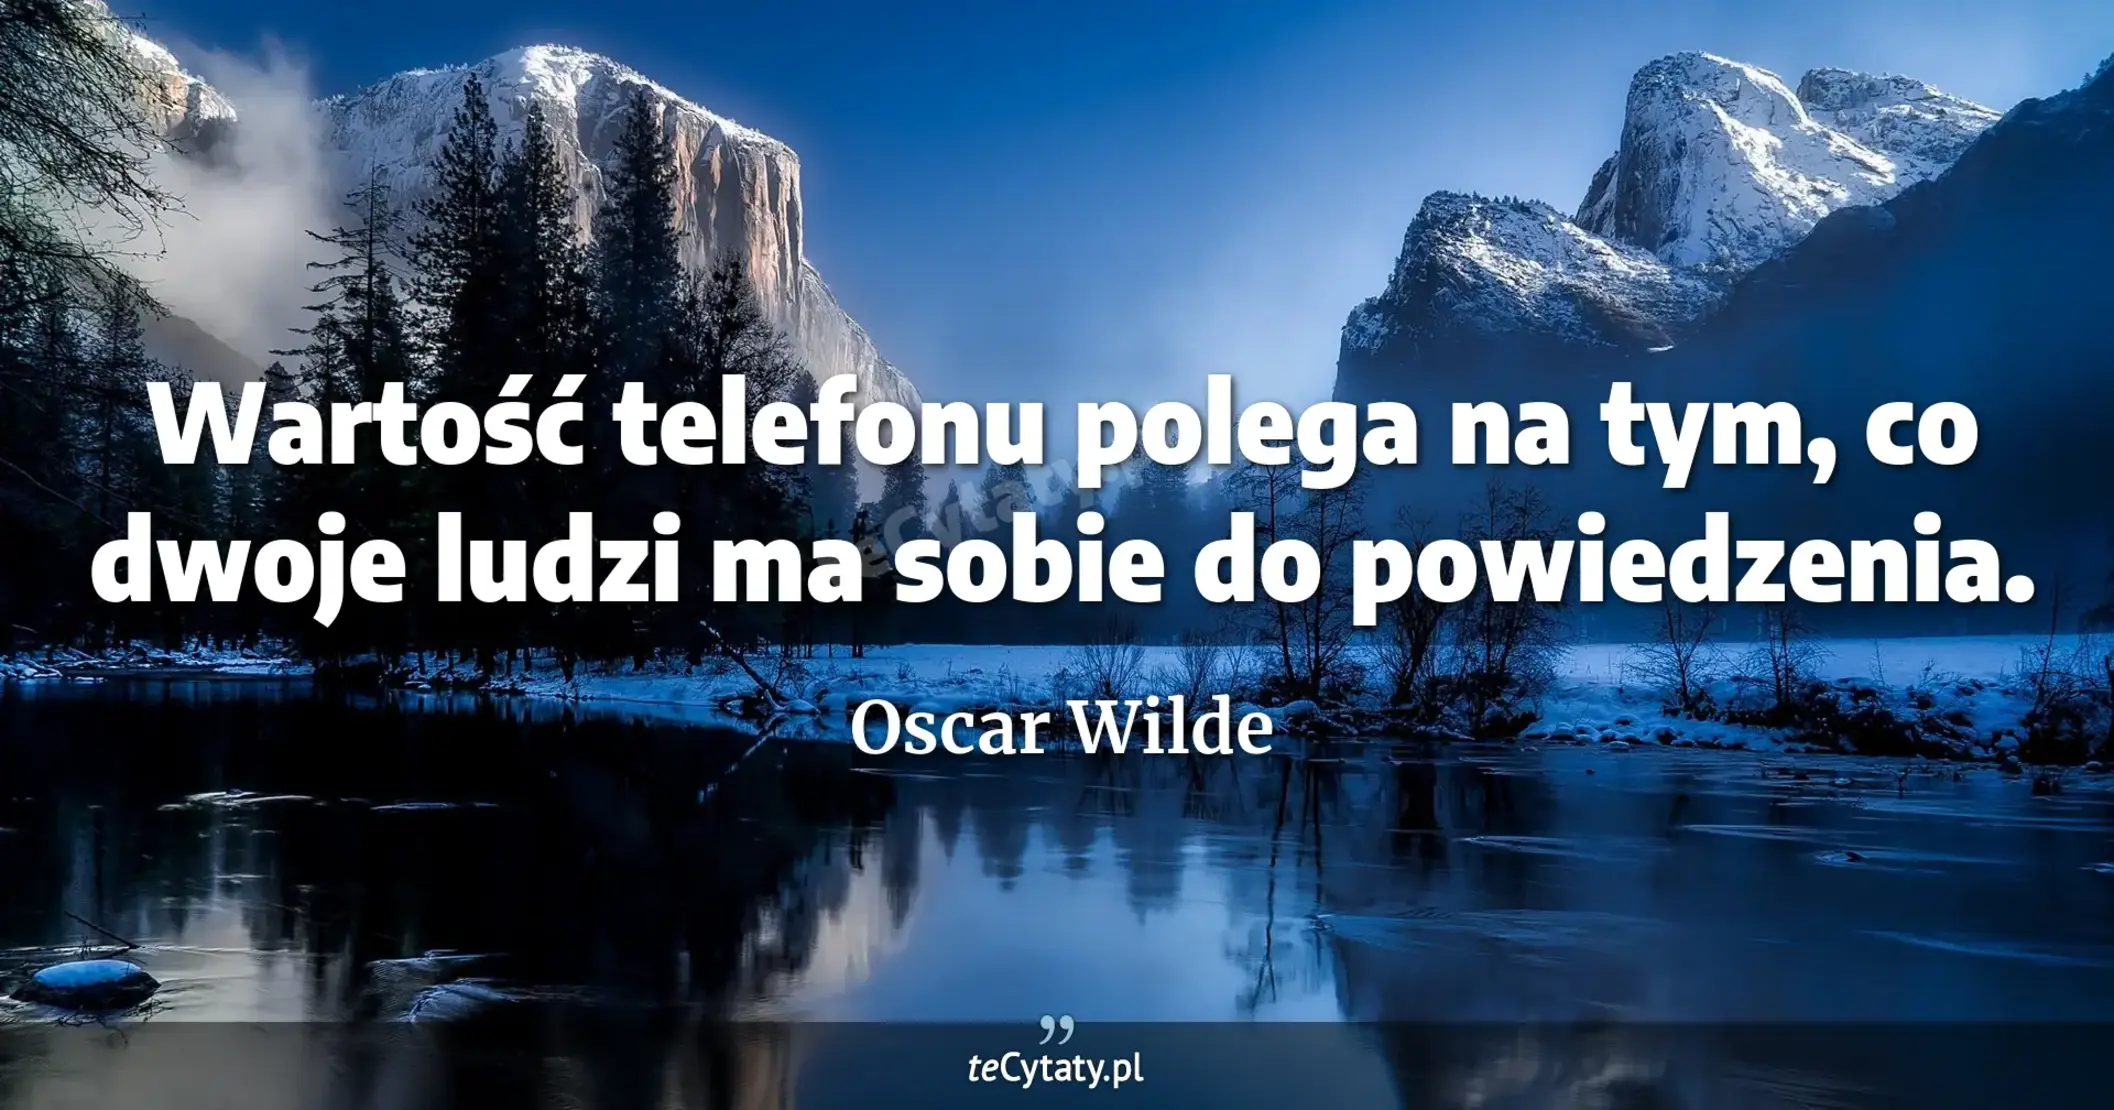 Wartość telefonu polega na tym, co dwoje ludzi ma sobie do powiedzenia. - Oscar Wilde